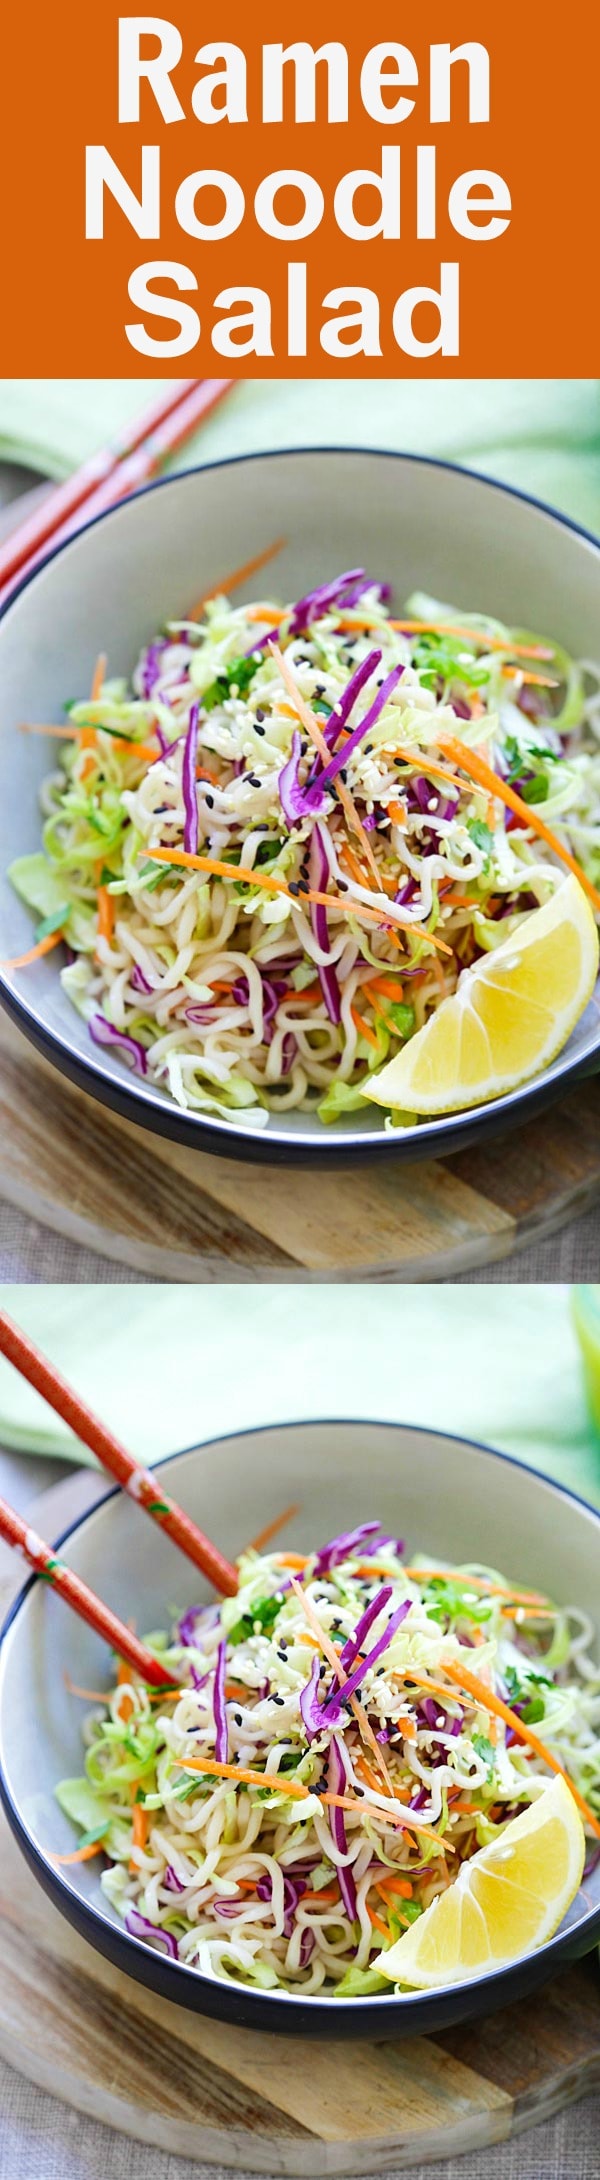 Asian Ramen Noodle Salad 55